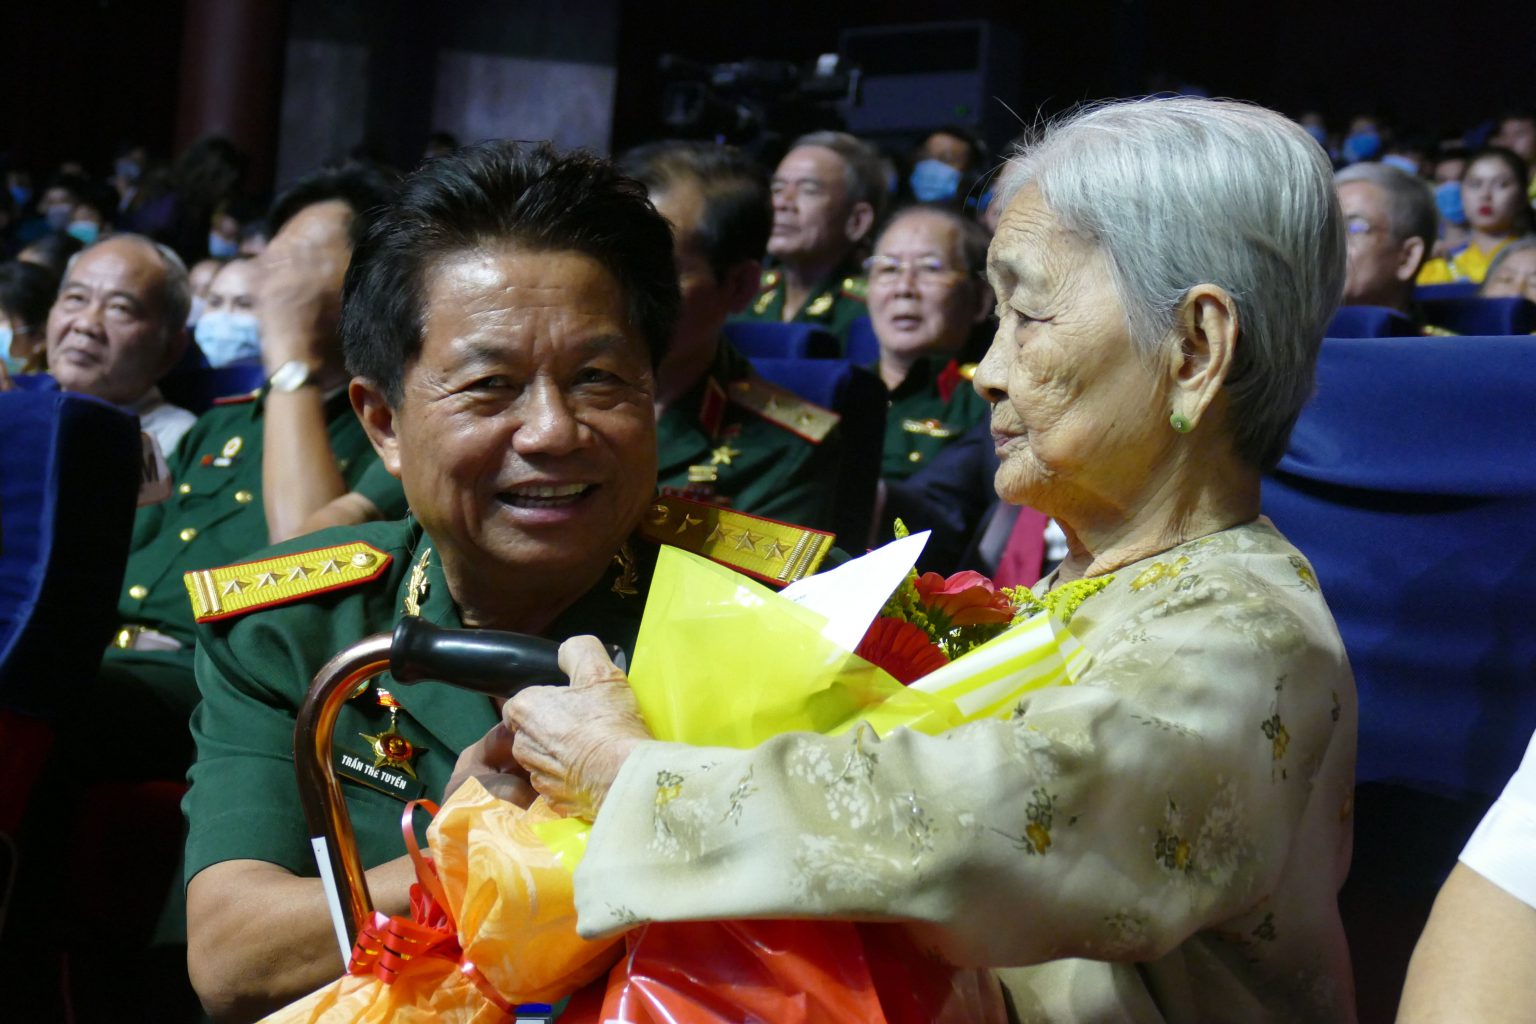 Đại tá Trần Thế Tuyển - Chủ tịch Hội hỗ trợ Gia đình Liệt sỹ TP.HCM, tặng hoa cảm ơn các Mẹ VN Anh hùng trong Chương trình nghệ thuật đặc biệt 